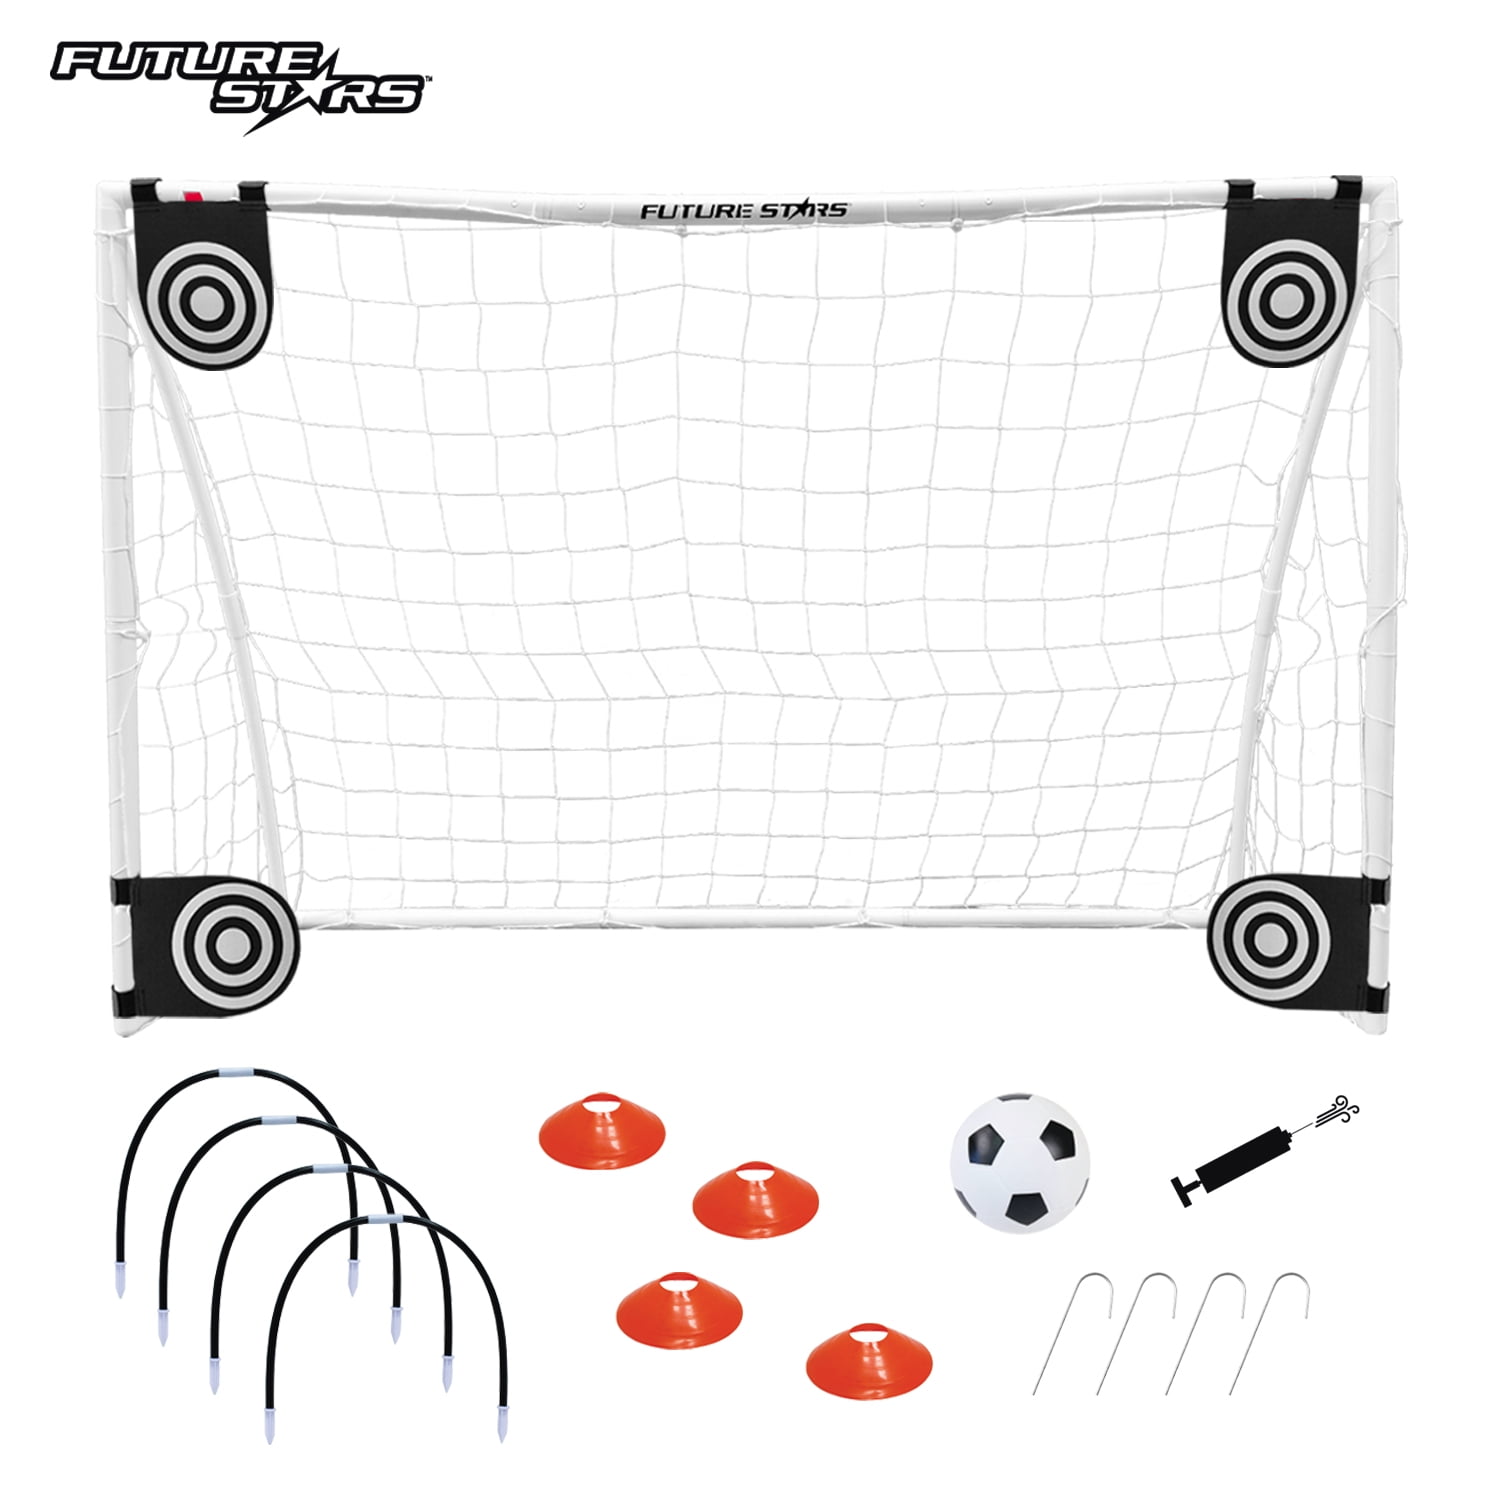 Kickmaster Kids Football Soccer 6 Foot Fibreglass Frame Goal With Net M06140 